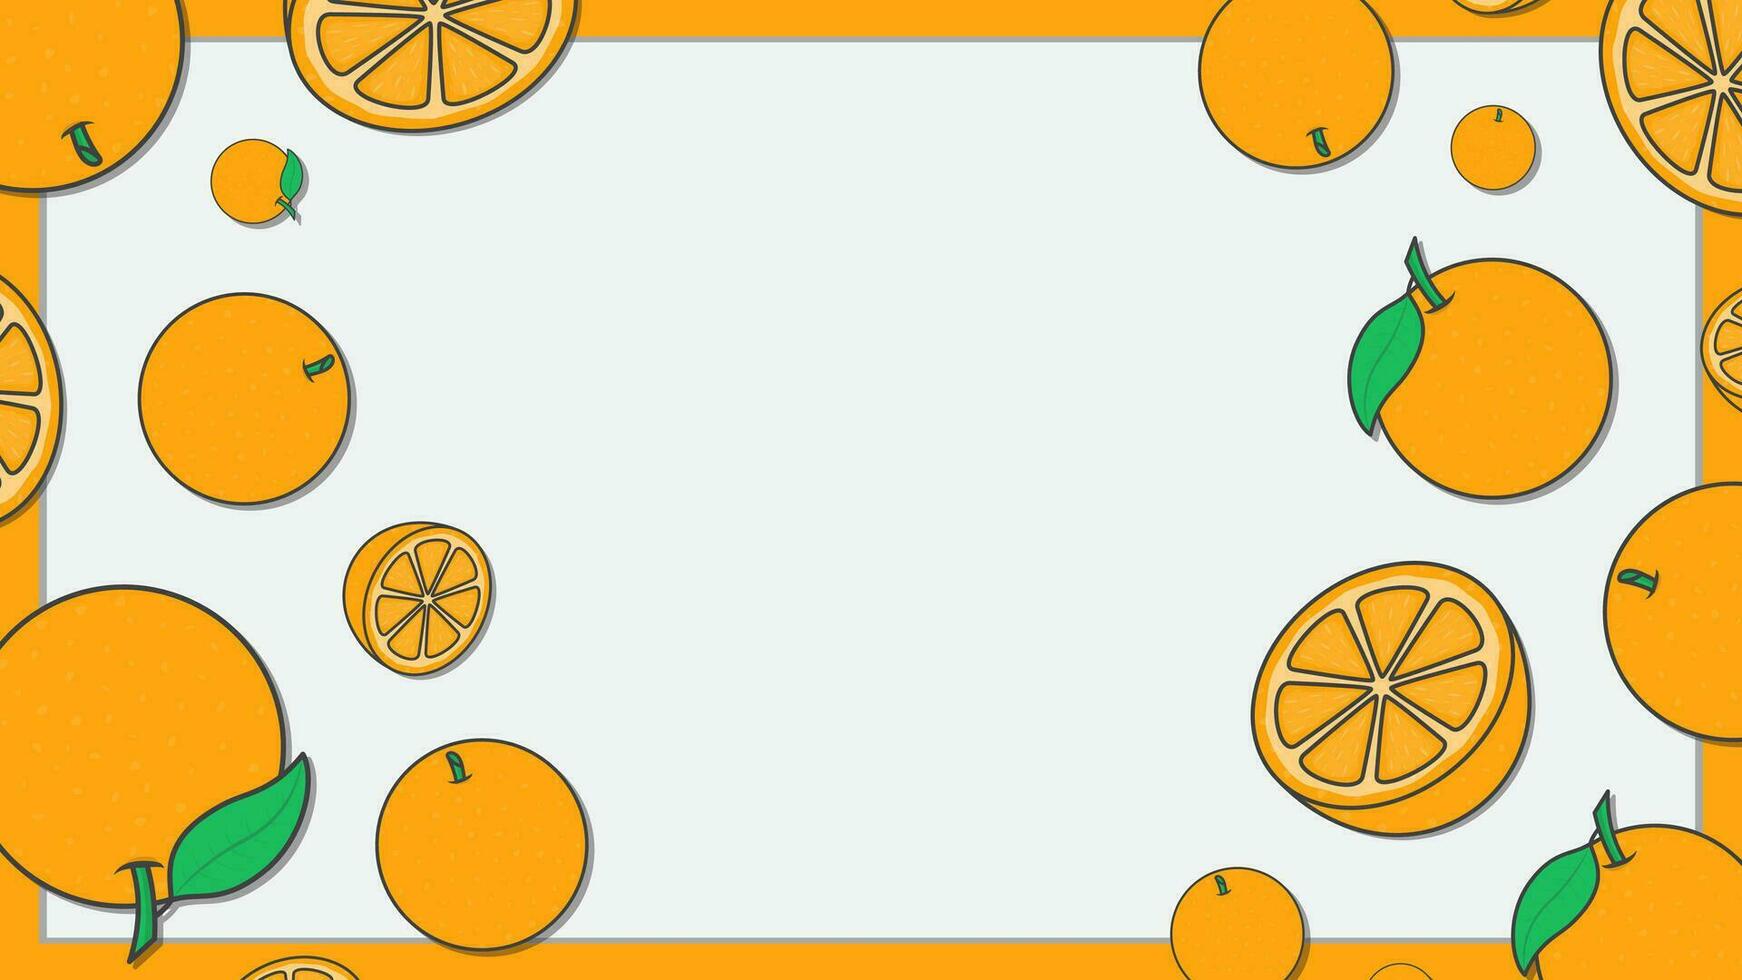 Orange Citrus Fruit Background Design Template. Orange Fruit Cartoon Vector Illustration. Citrus